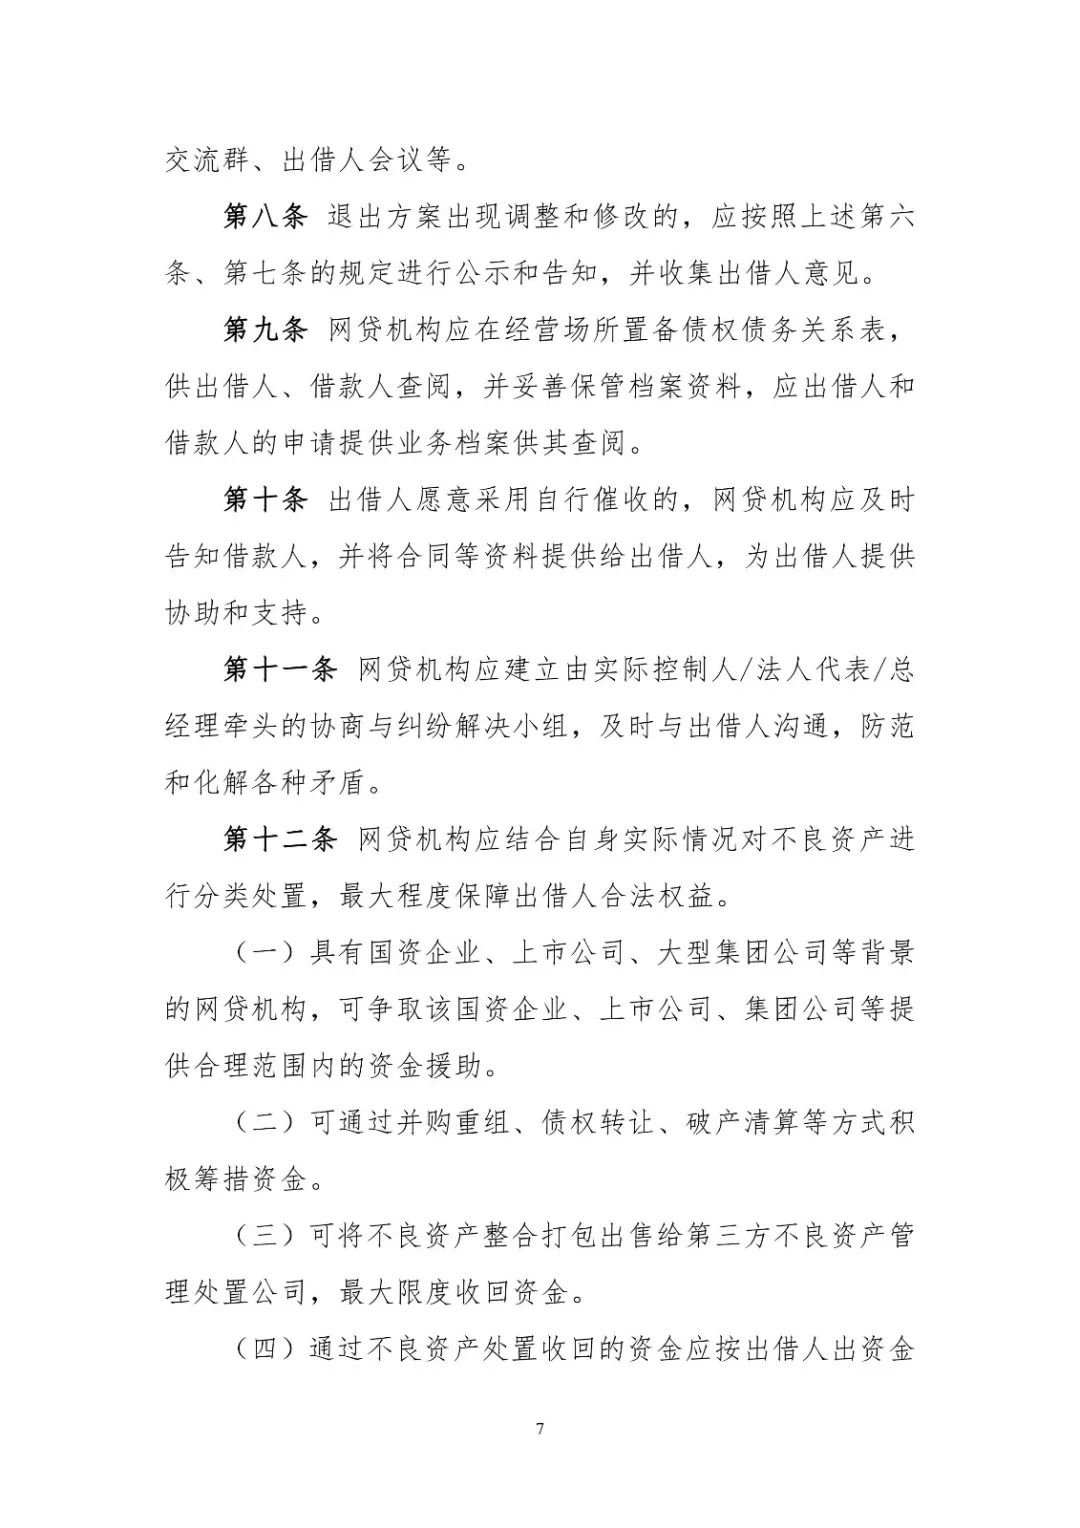 广州互金协会发布P2P..业务退出指引，提出“三不可“原则